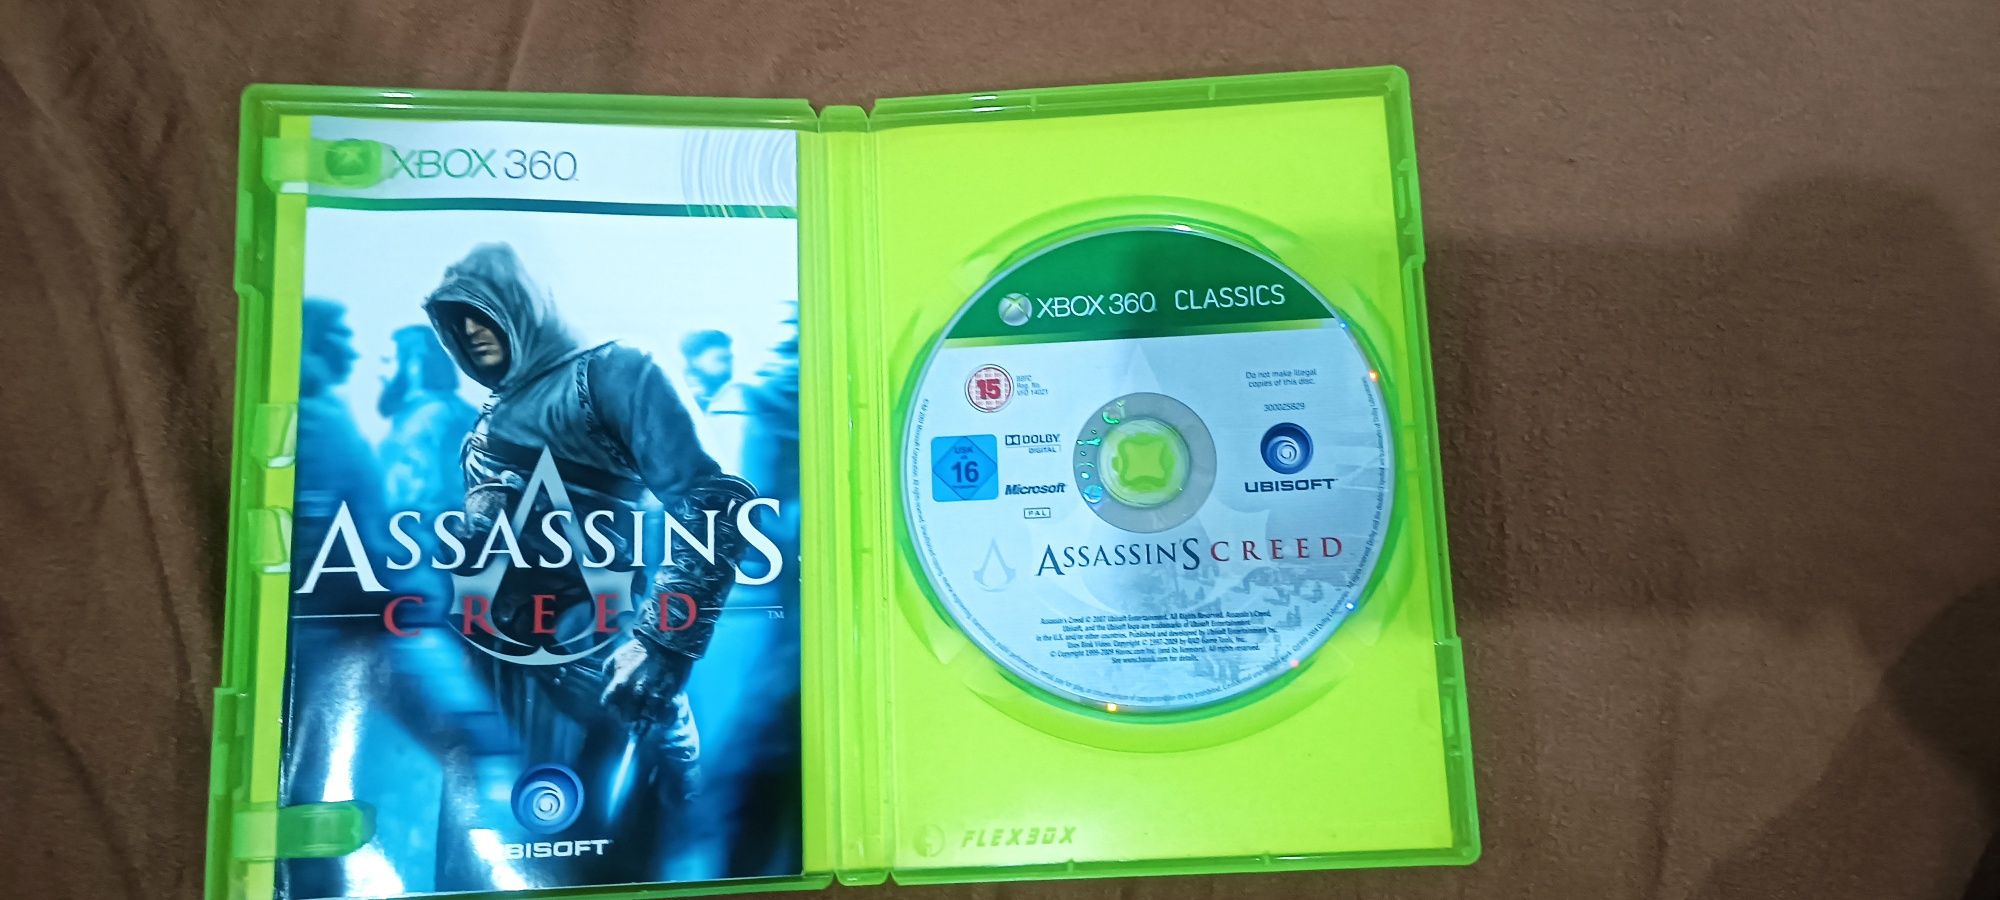 Assassins creed xbox 360 classics